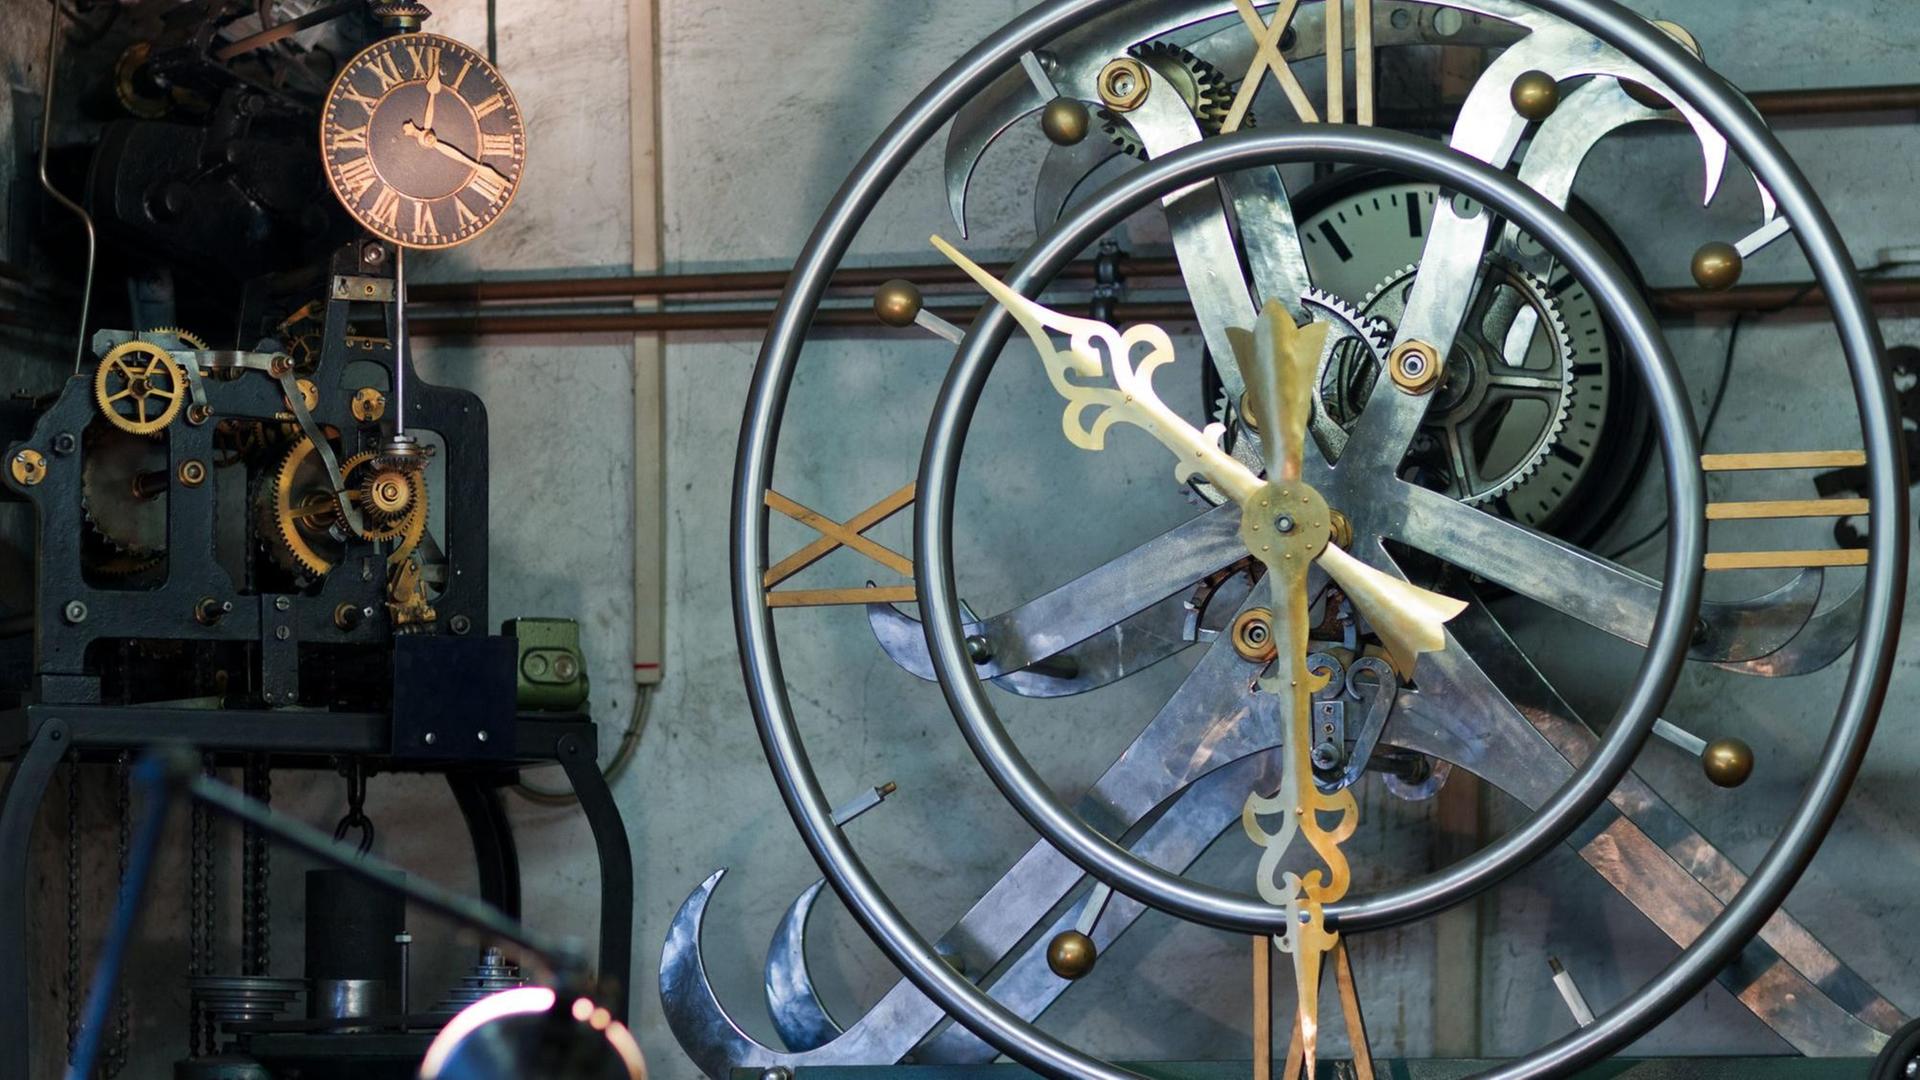 Eine selbst entwickelte Uhr mit halben Zahnrädern ist am 08.03.2012 in der Werkstatt von Helmuth Schmidt im mecklenburgischen Leppin zu sehen. Der gelernte Mechaniker und Uhrenliebhaber entwickelt und baut die merkwürdigesten Zeitmesser. Ein Uhrwerk mit halben Zahnrädern oder eine zehn Zentner schwere, rückwärtslaufende Uhr mit einem beweglichen Ziffernblatt entstanden bisher in der kleinen Werkstatt.